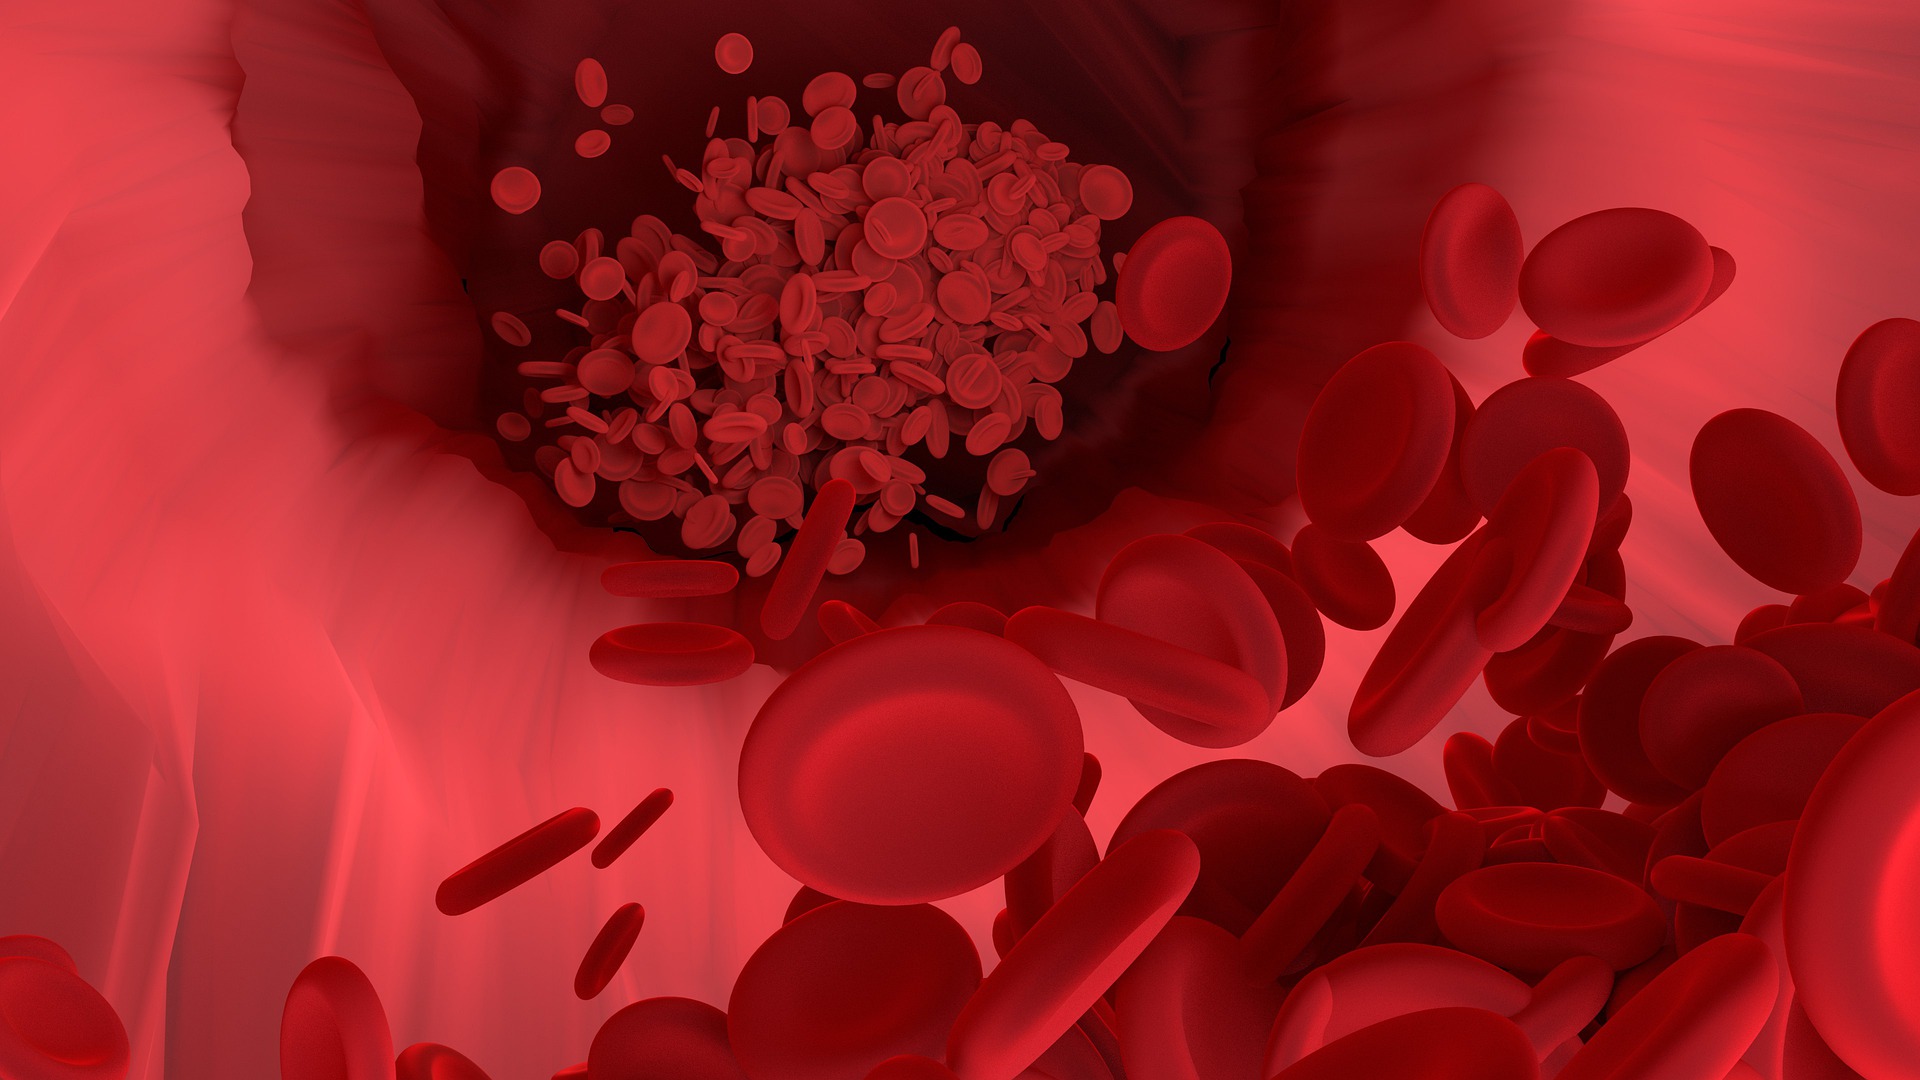 Estudio muestra evidencia adicional de que las personas con ciertos tipos de sangre pueden tener más probabilidades de contraer coronavirus. (Foto Prensa Libre: Pixabay)